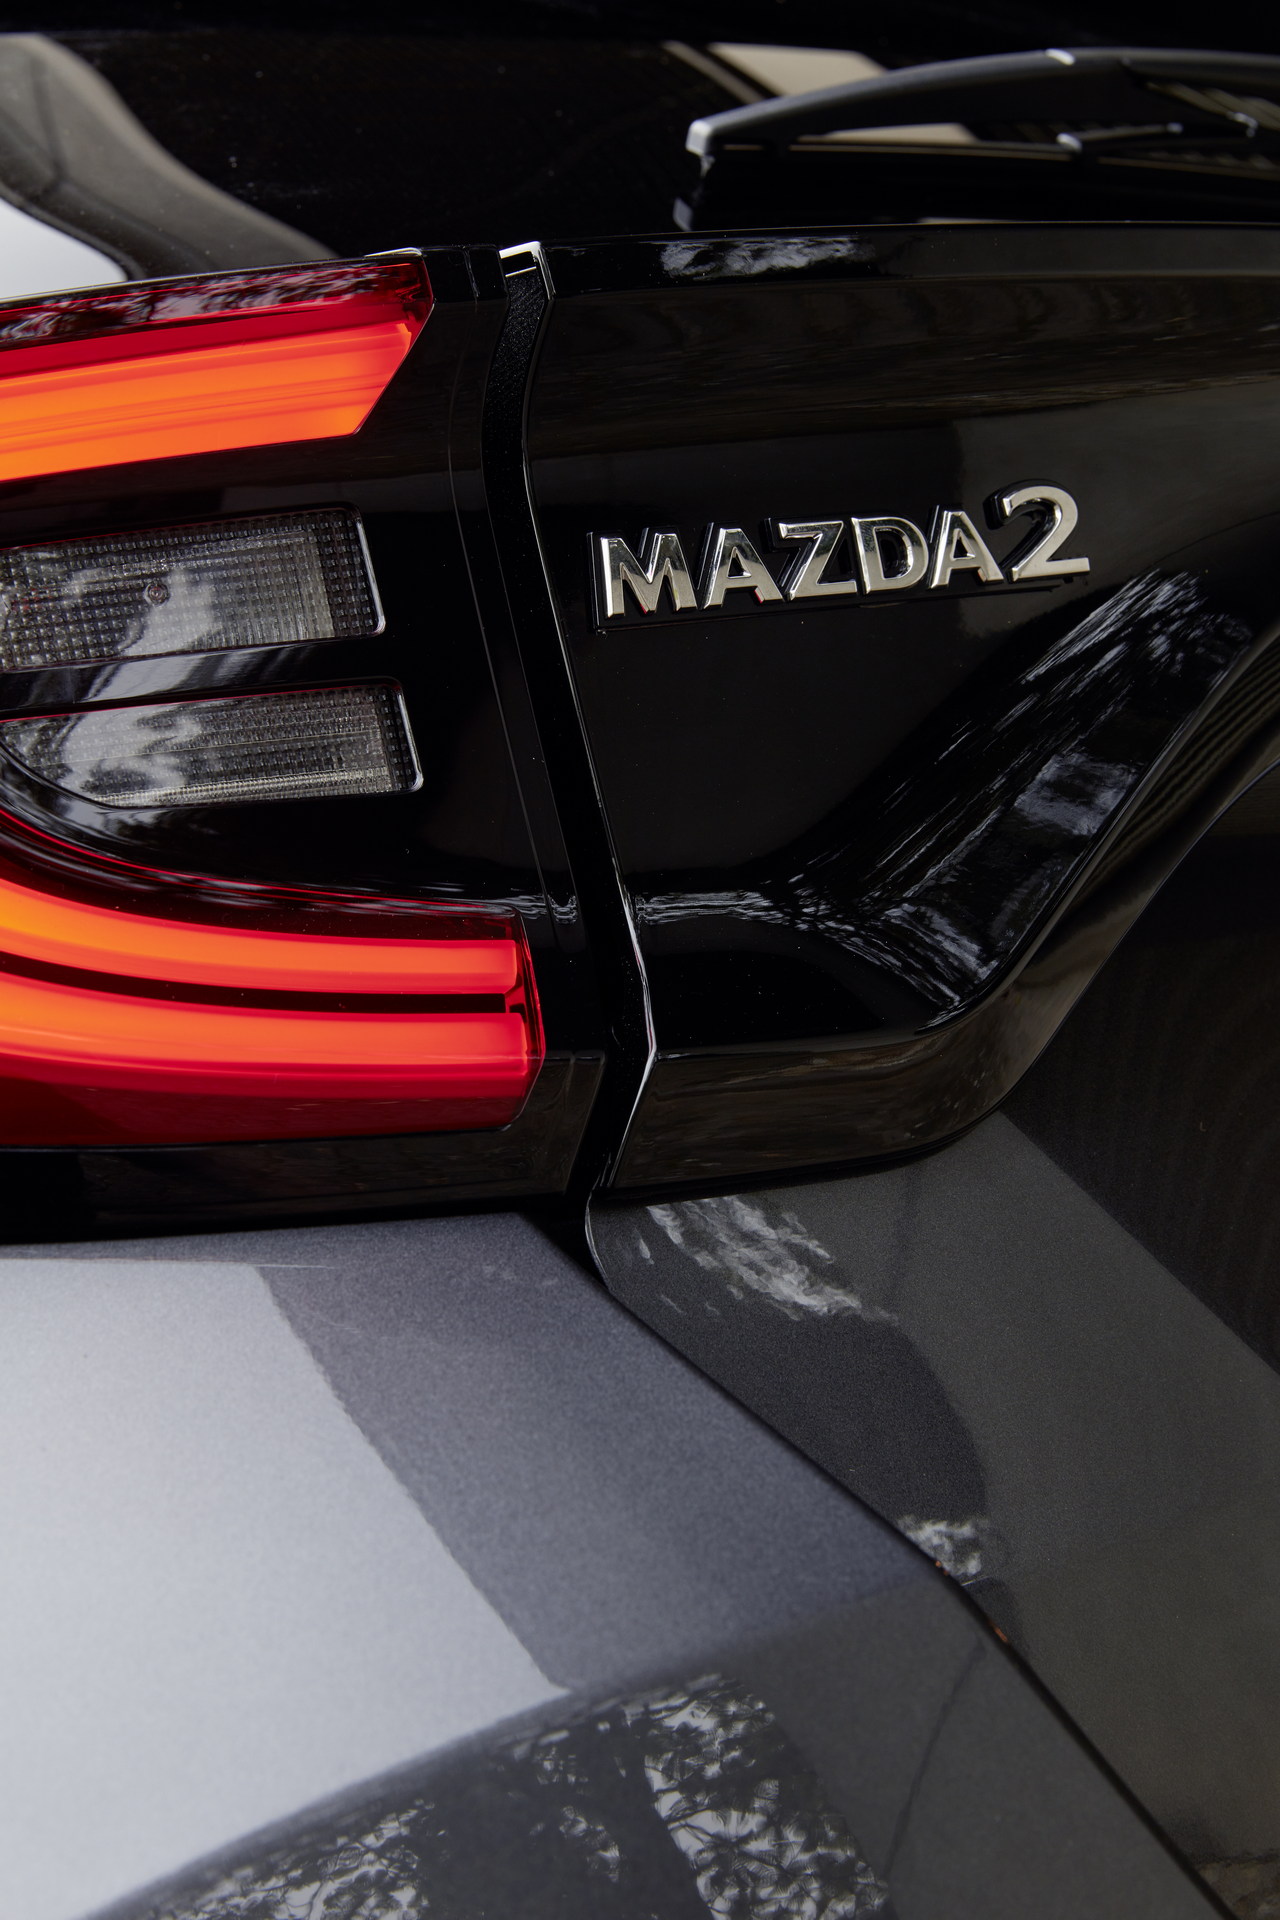 2022 Mazda2 Hybrid resim galerisi (08.12.2021)